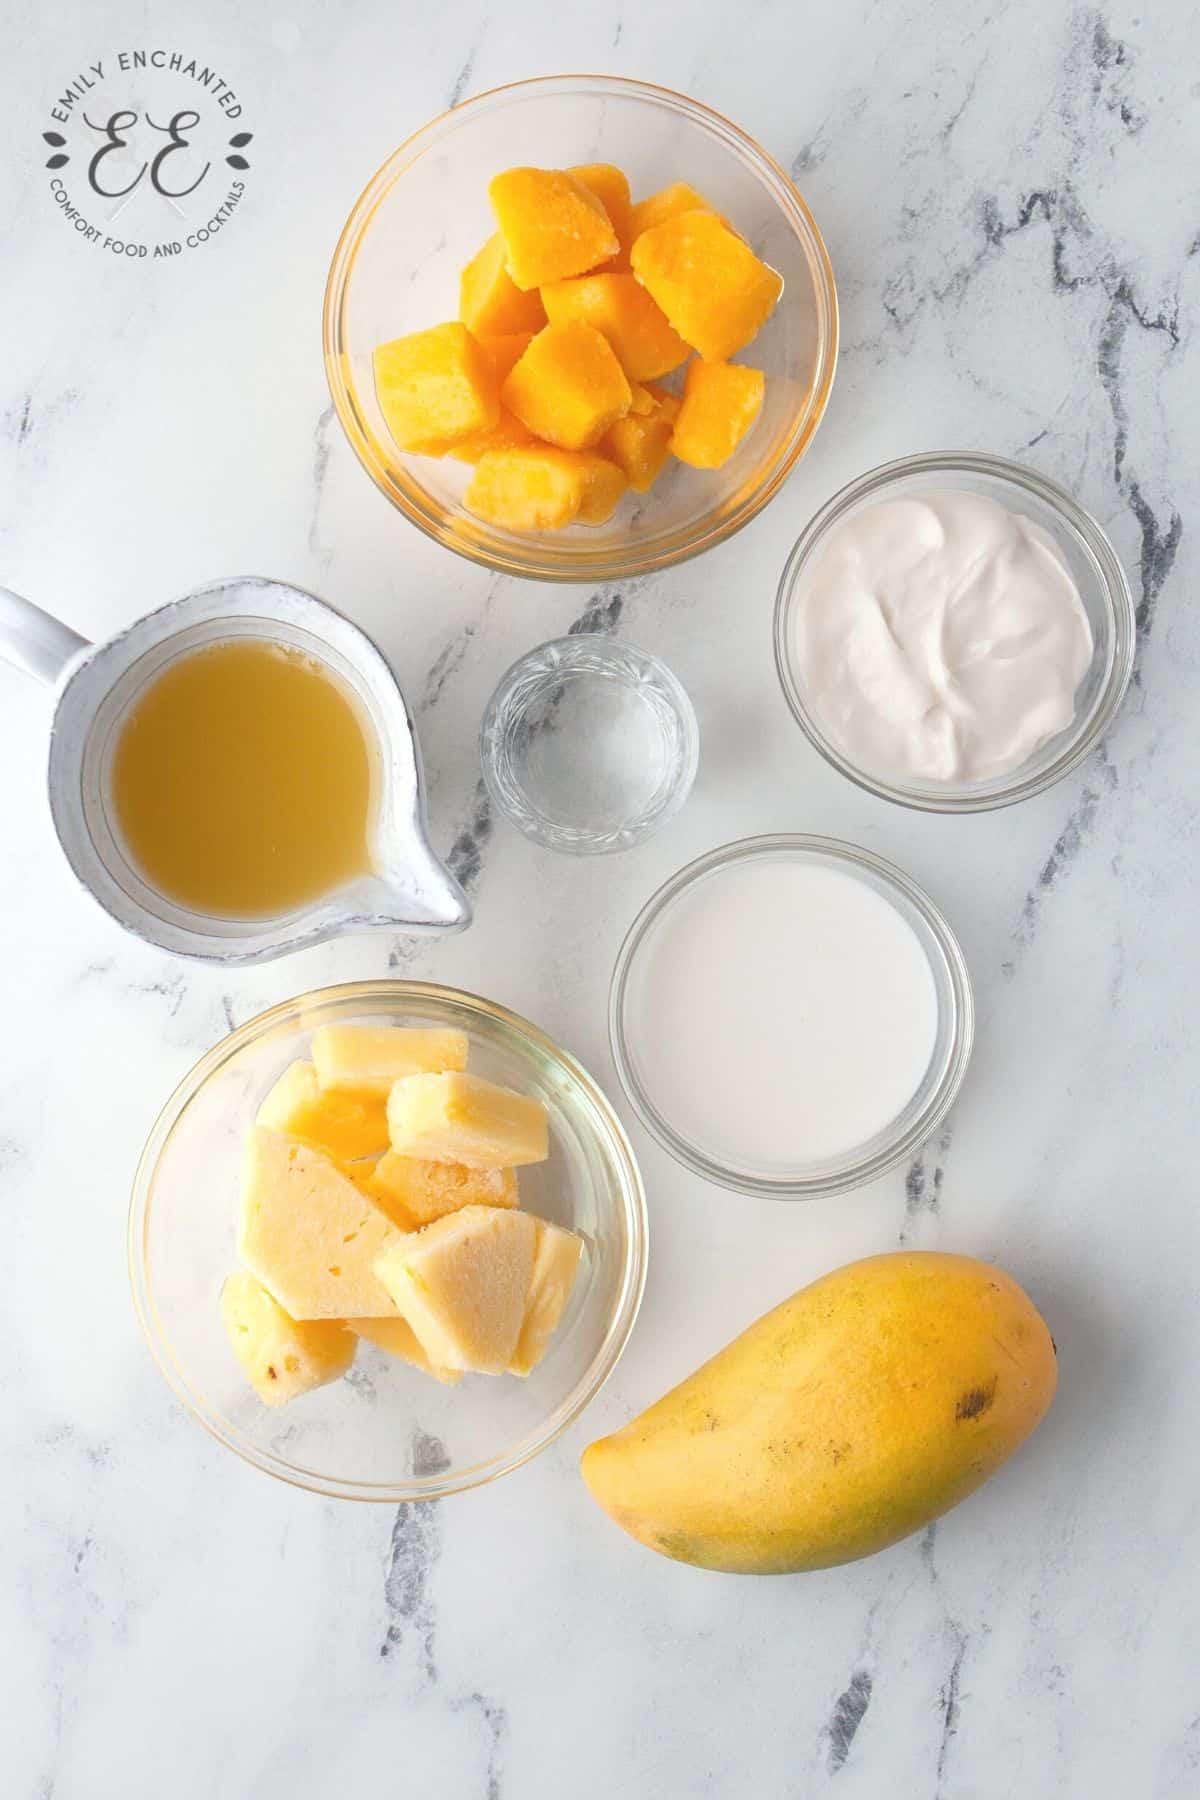 Mango Piña Colada Ingredients